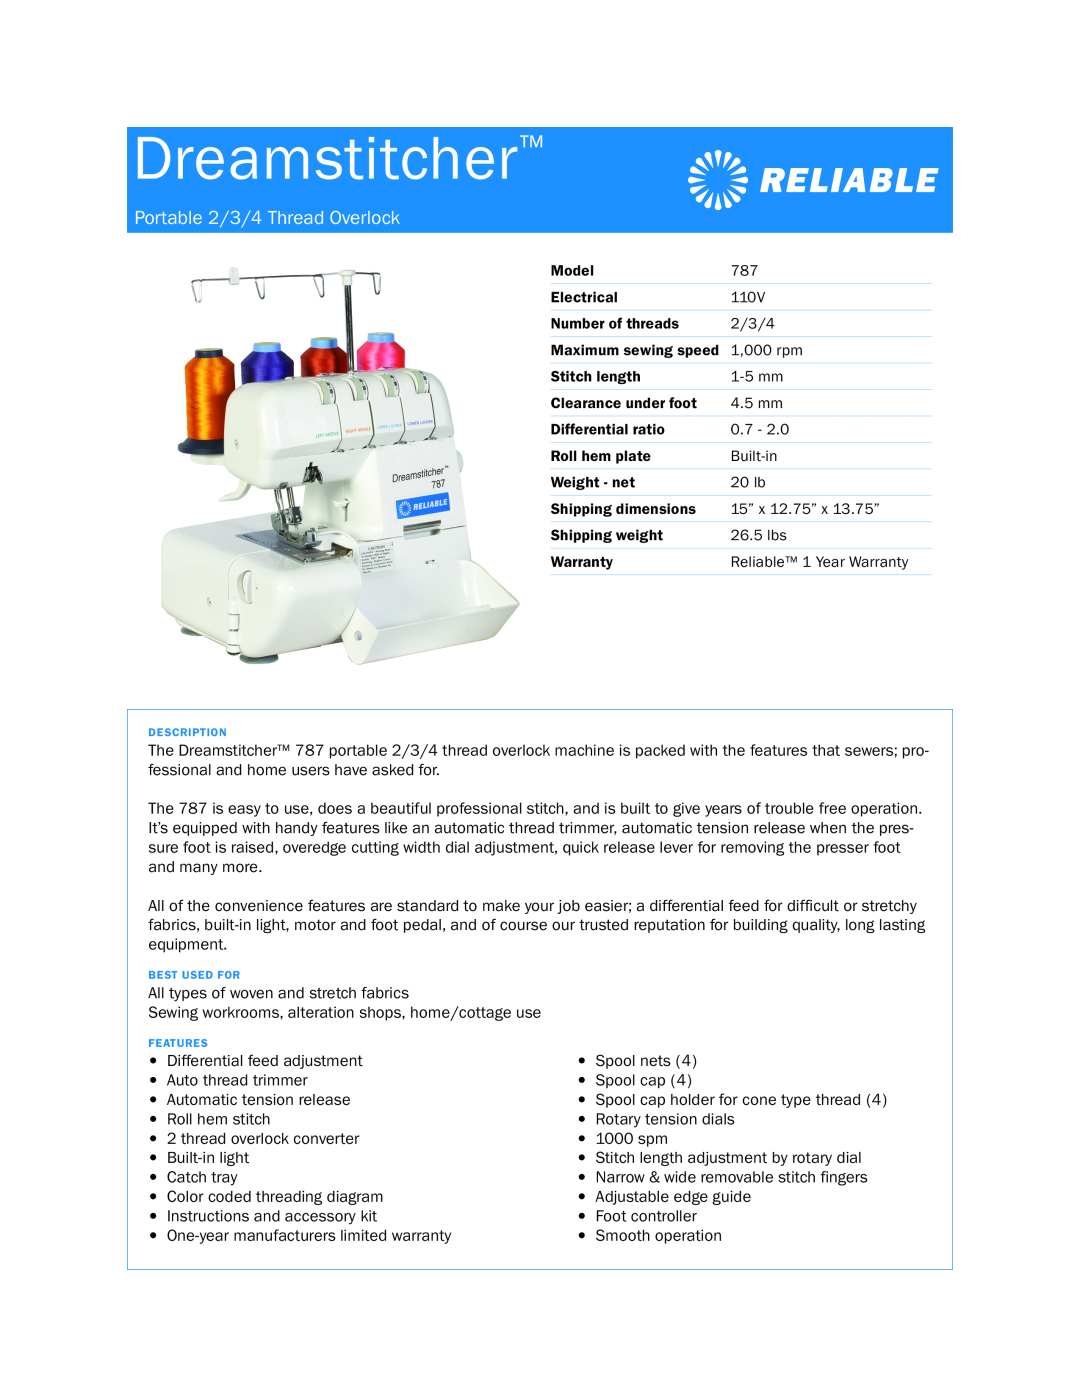 Reliable 787 dimensions Dreamstitcher, Portable 2/3/4 Thread Overlock 